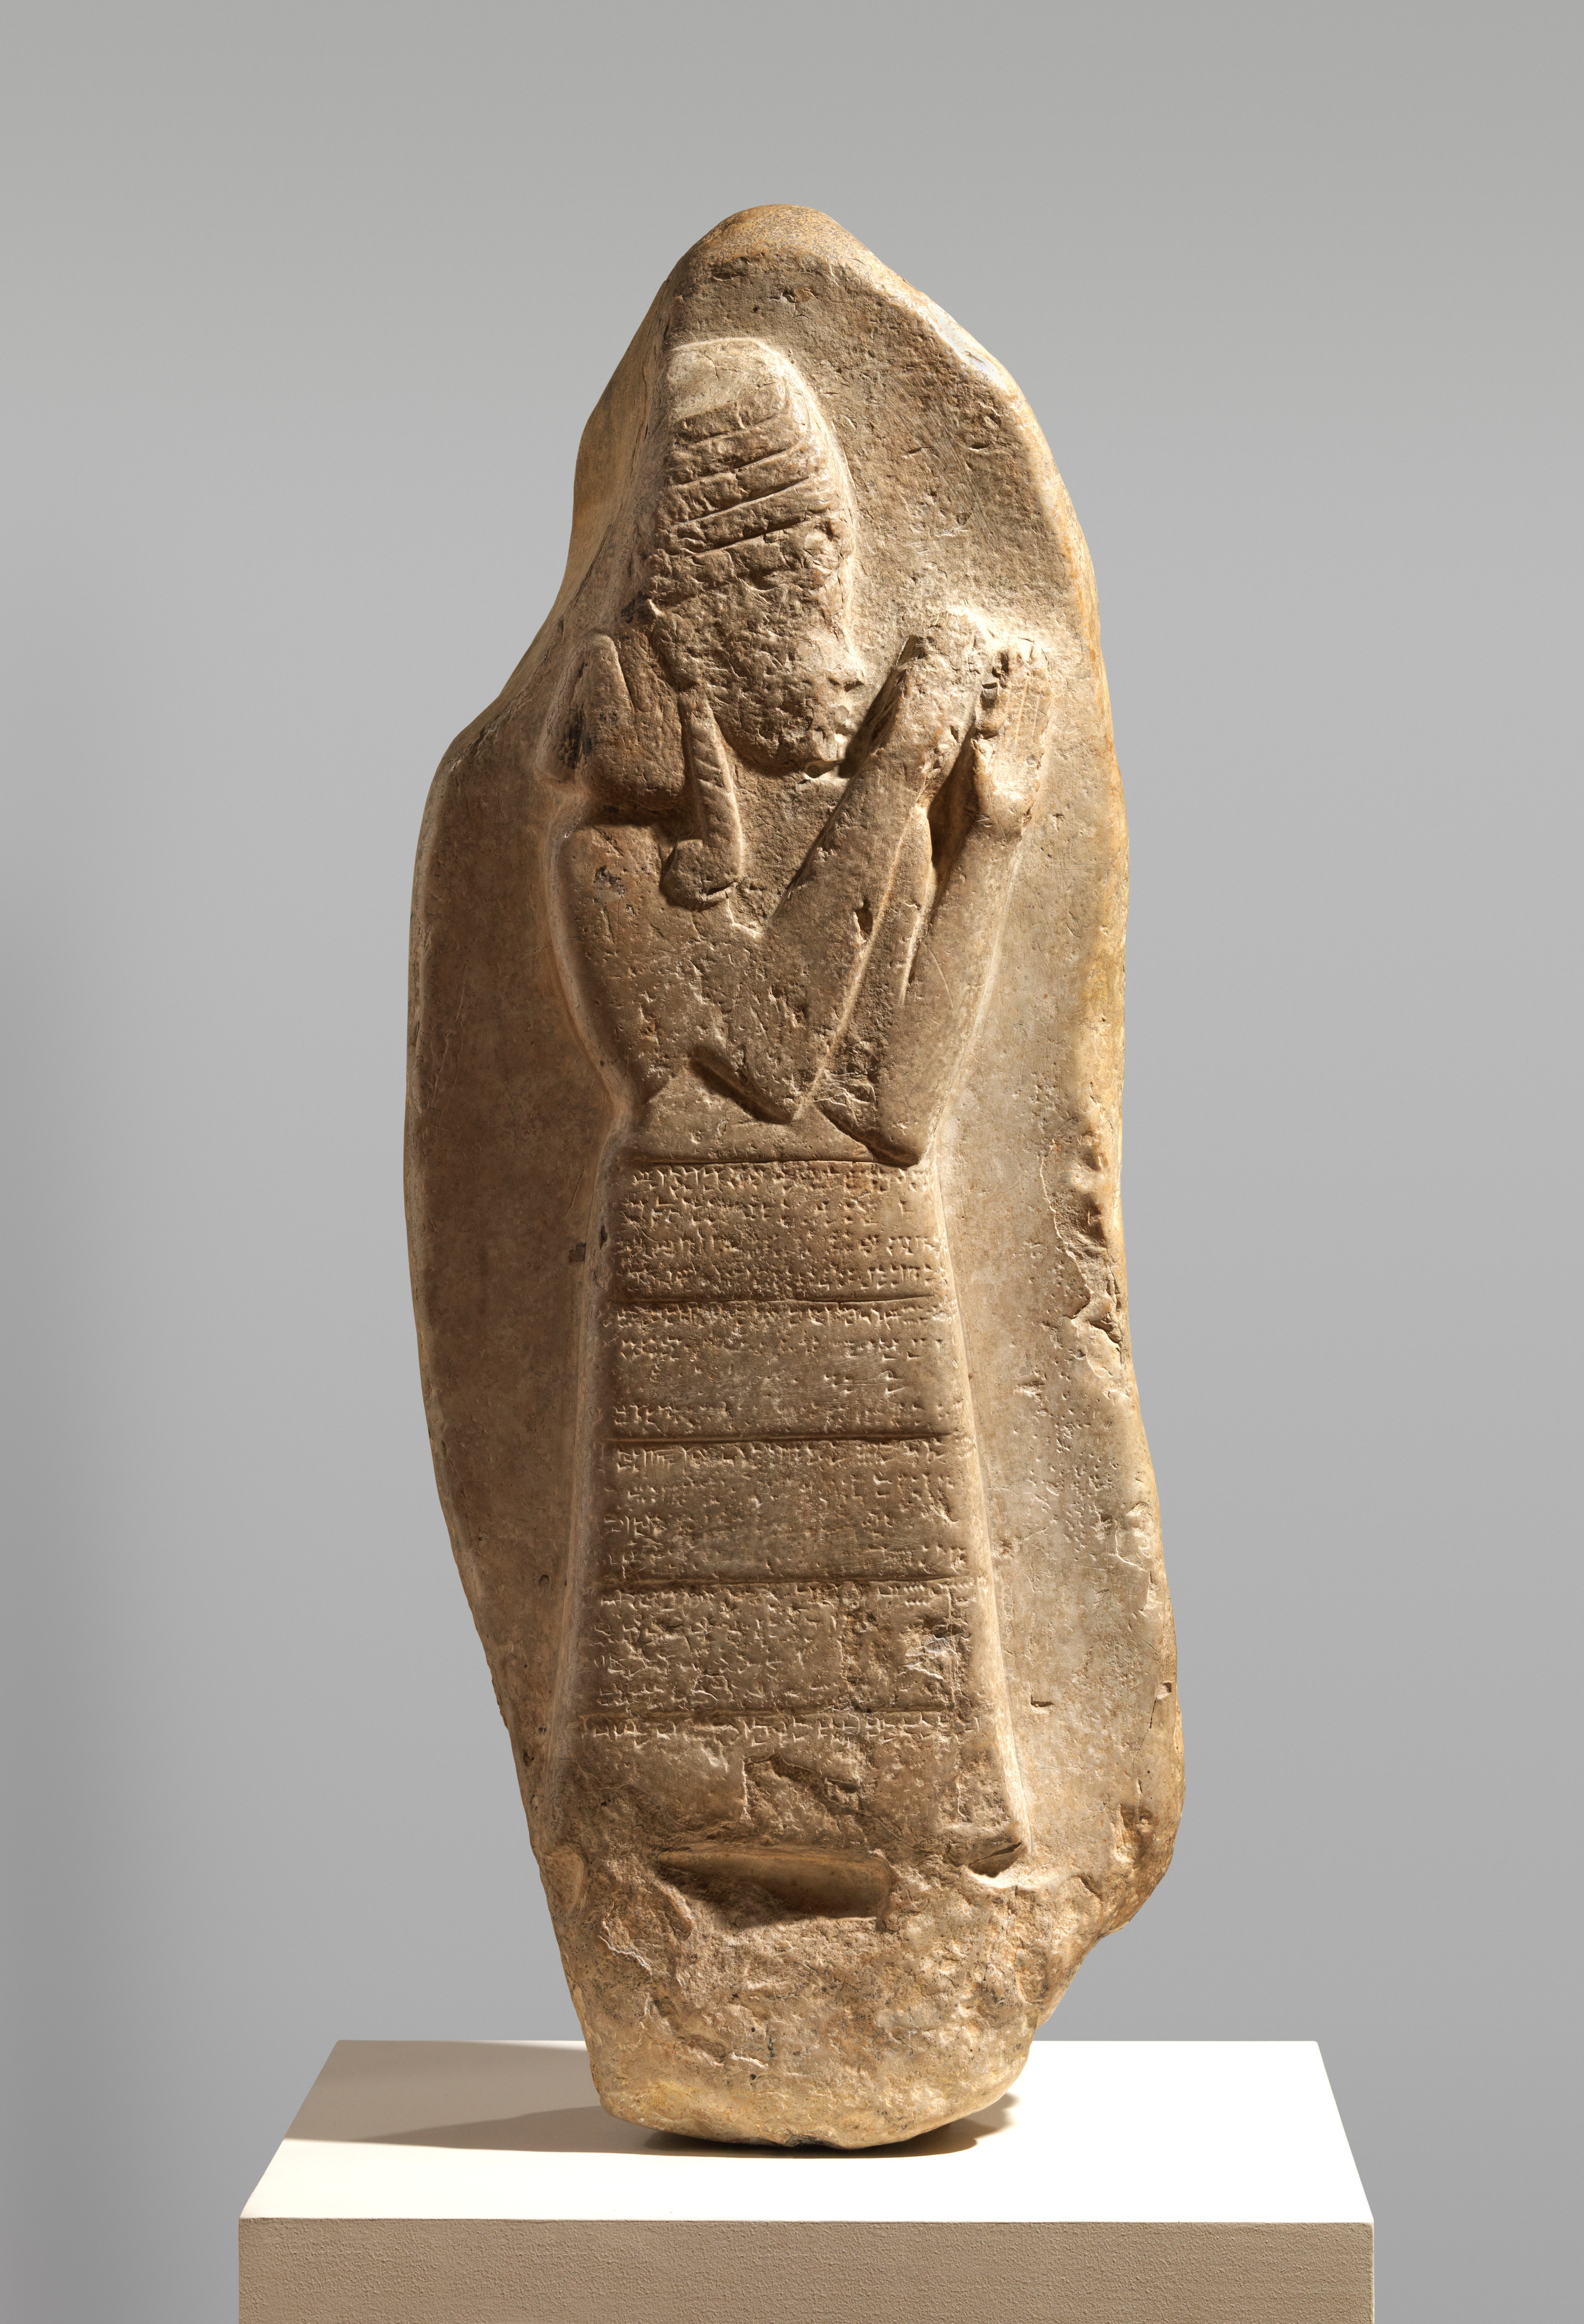 تباين في نظرة حضارات العراق القديم حيال الآلهة في بلاد الرافدين